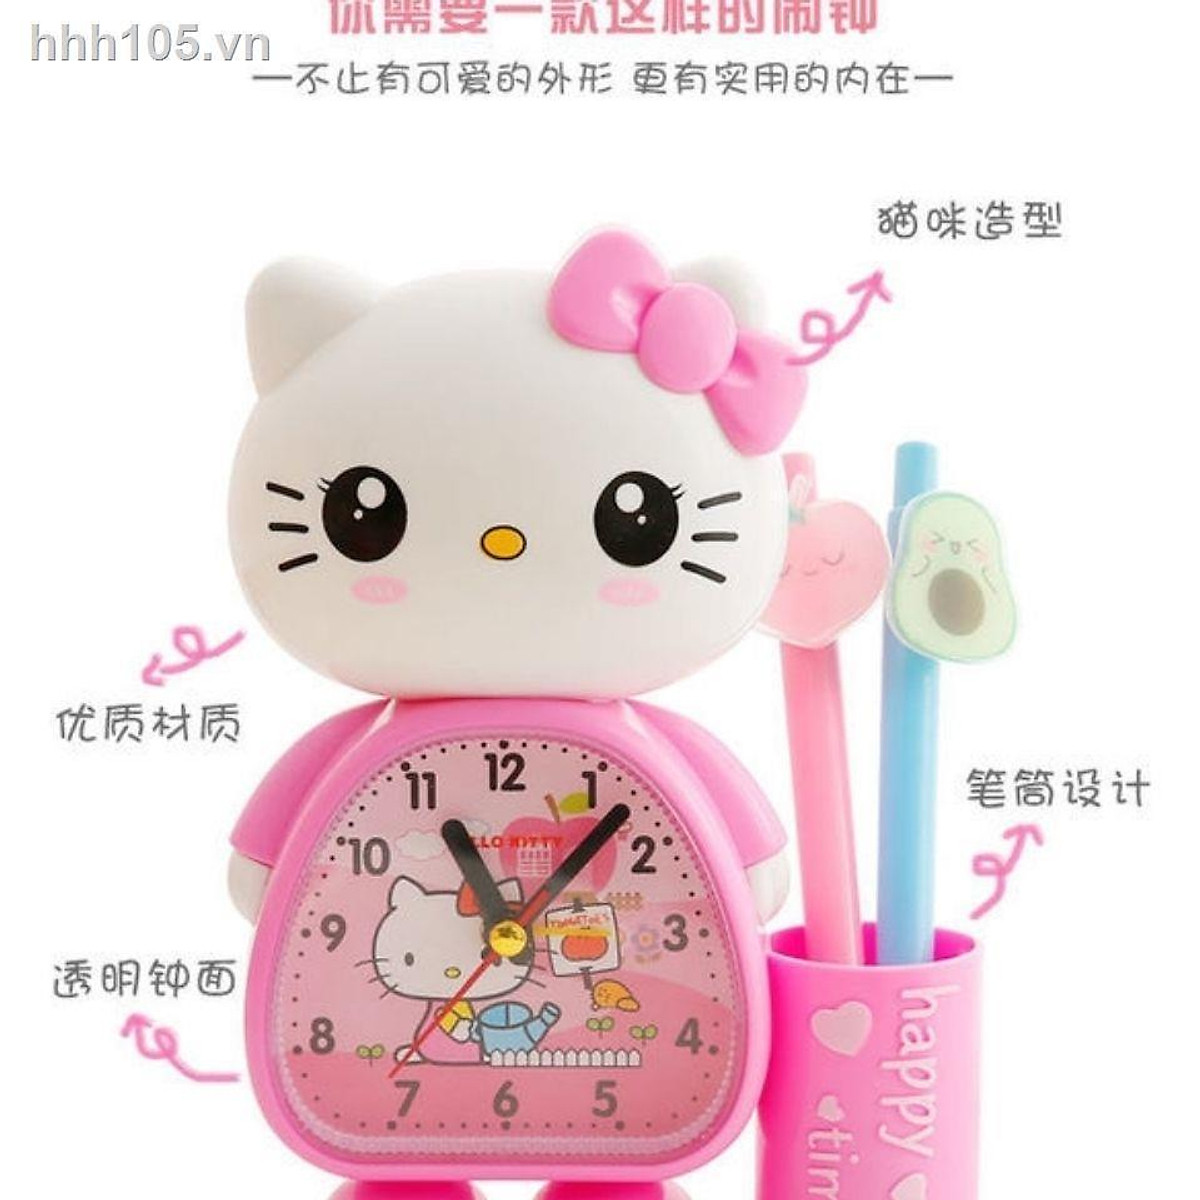 Mua Đồng hồ báo thức mini hình Hello Kitty dễ thương cho học sinh ...